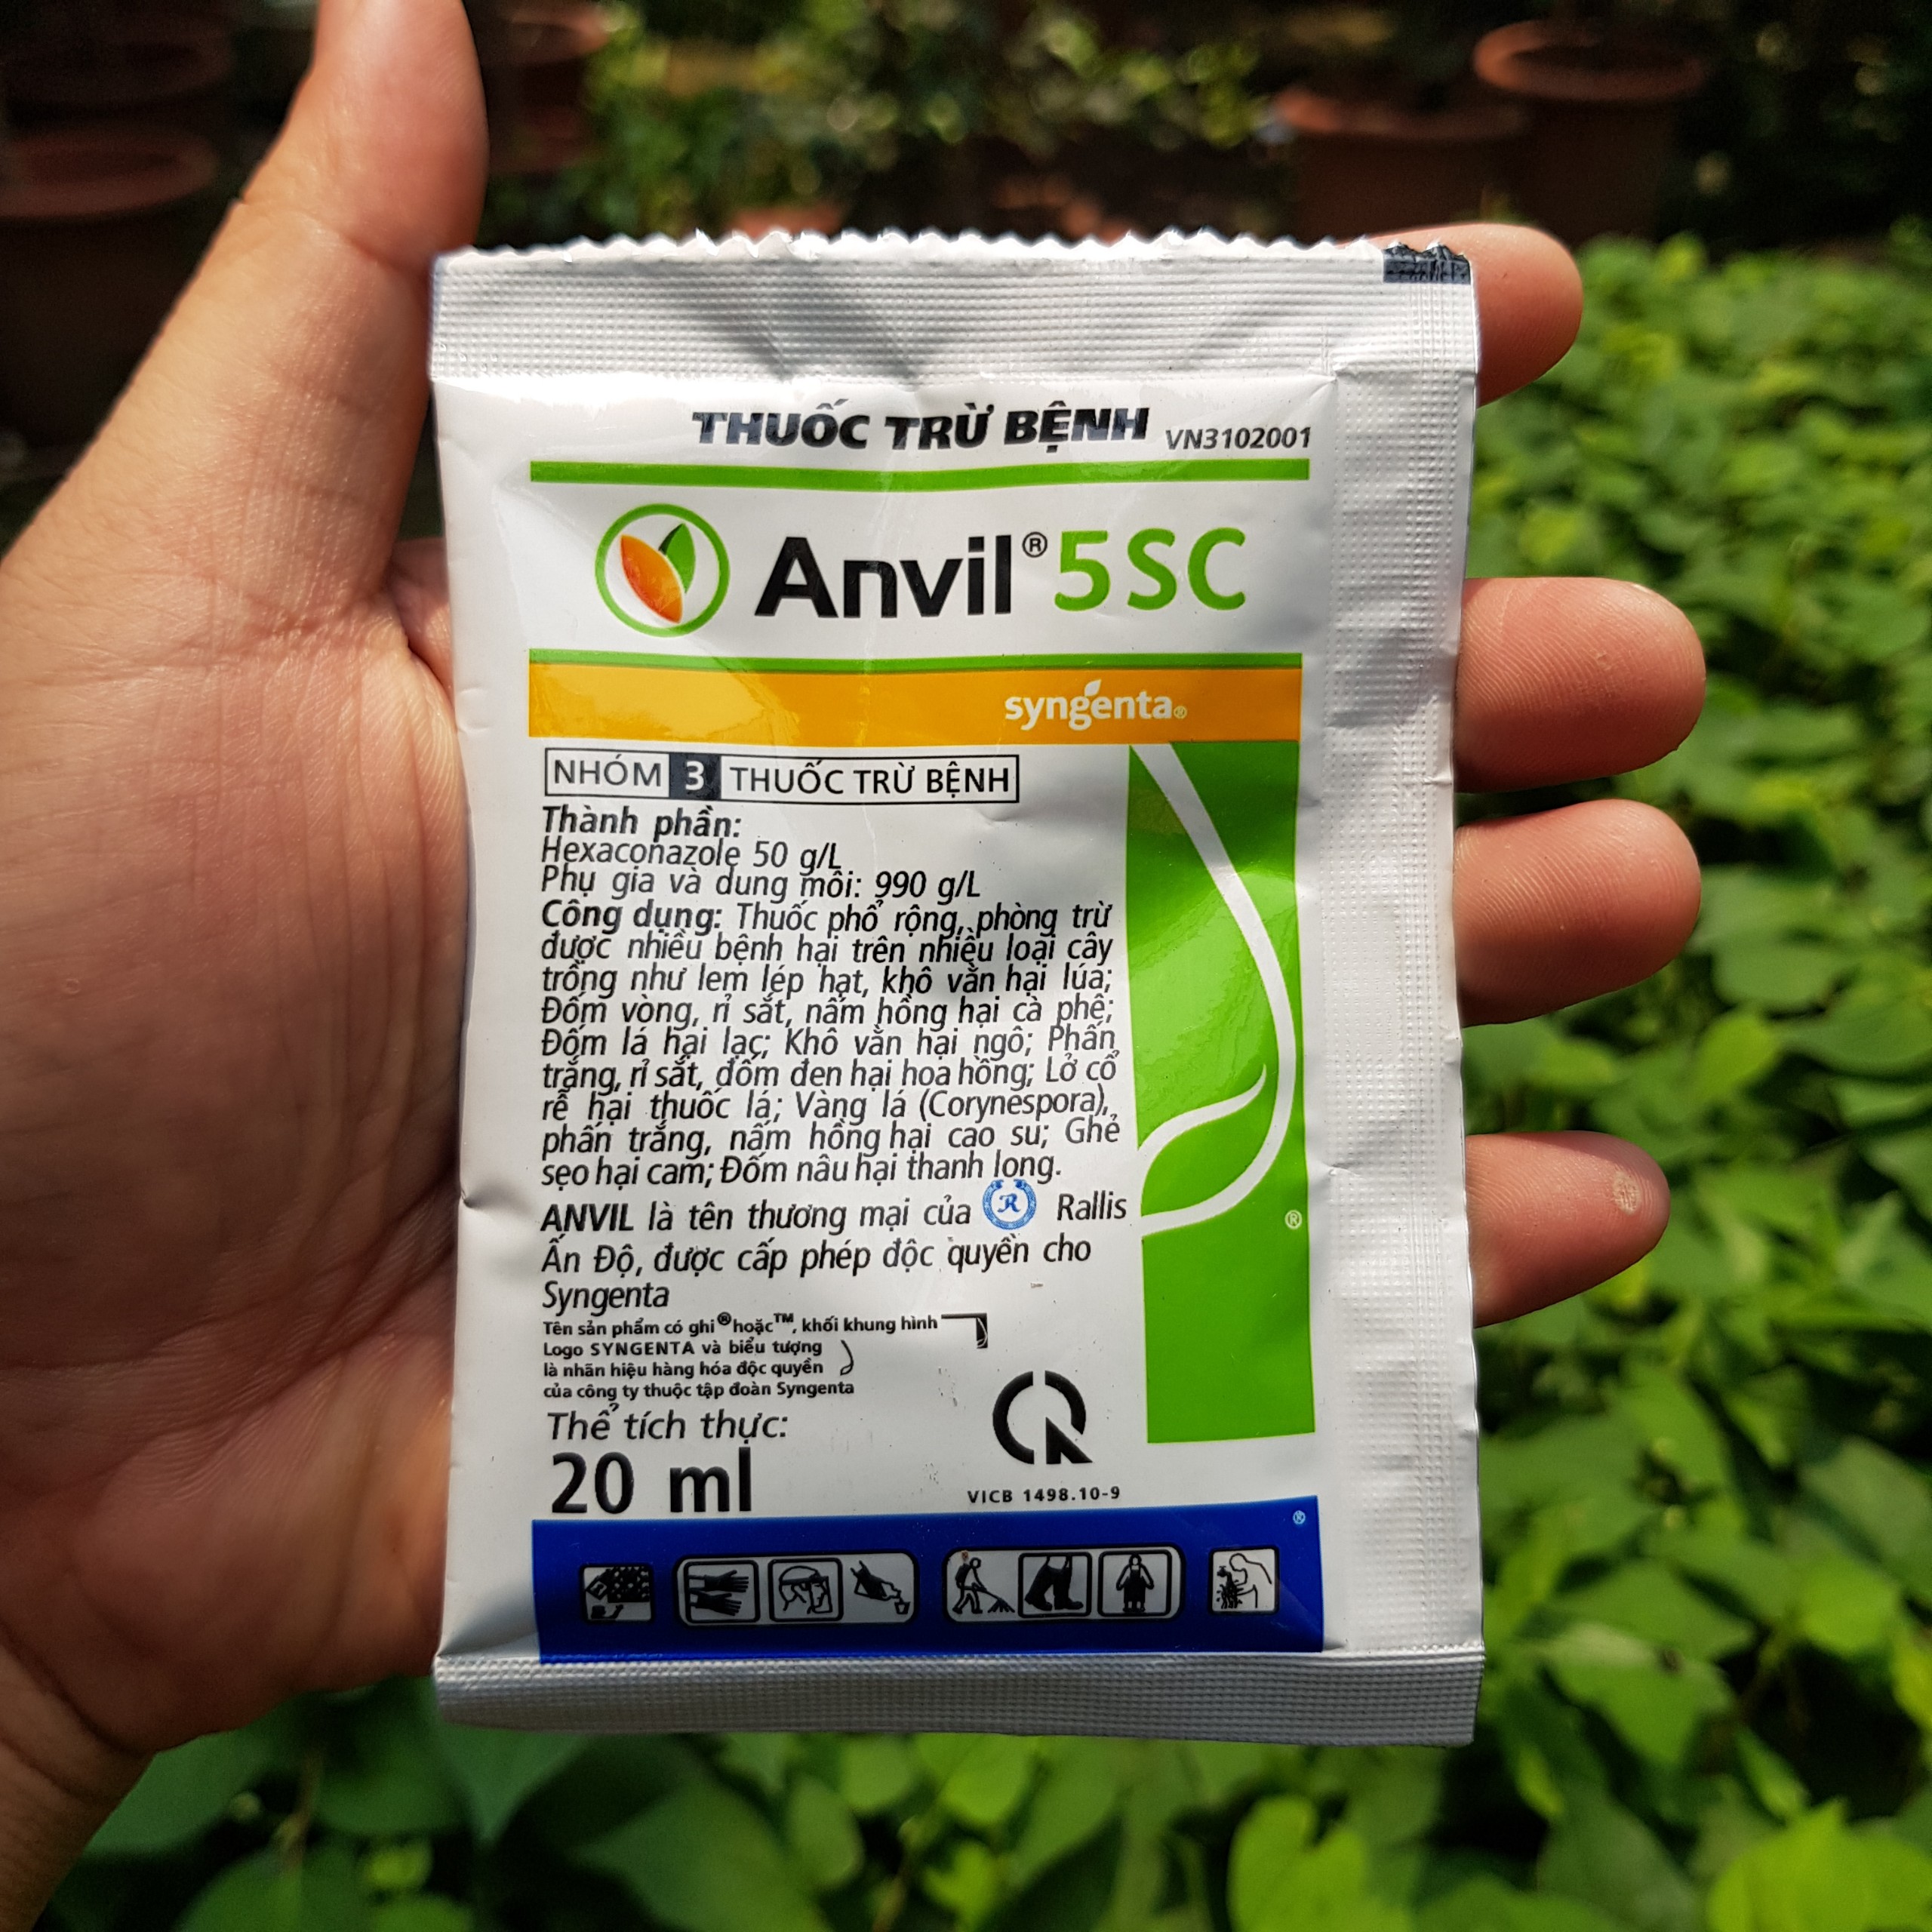 Gói 20ml Anvil 5SC thuốc trừ nấm bệnh rỉ sắt khô vằn chính hãng Syngenta Thụy Sỹ